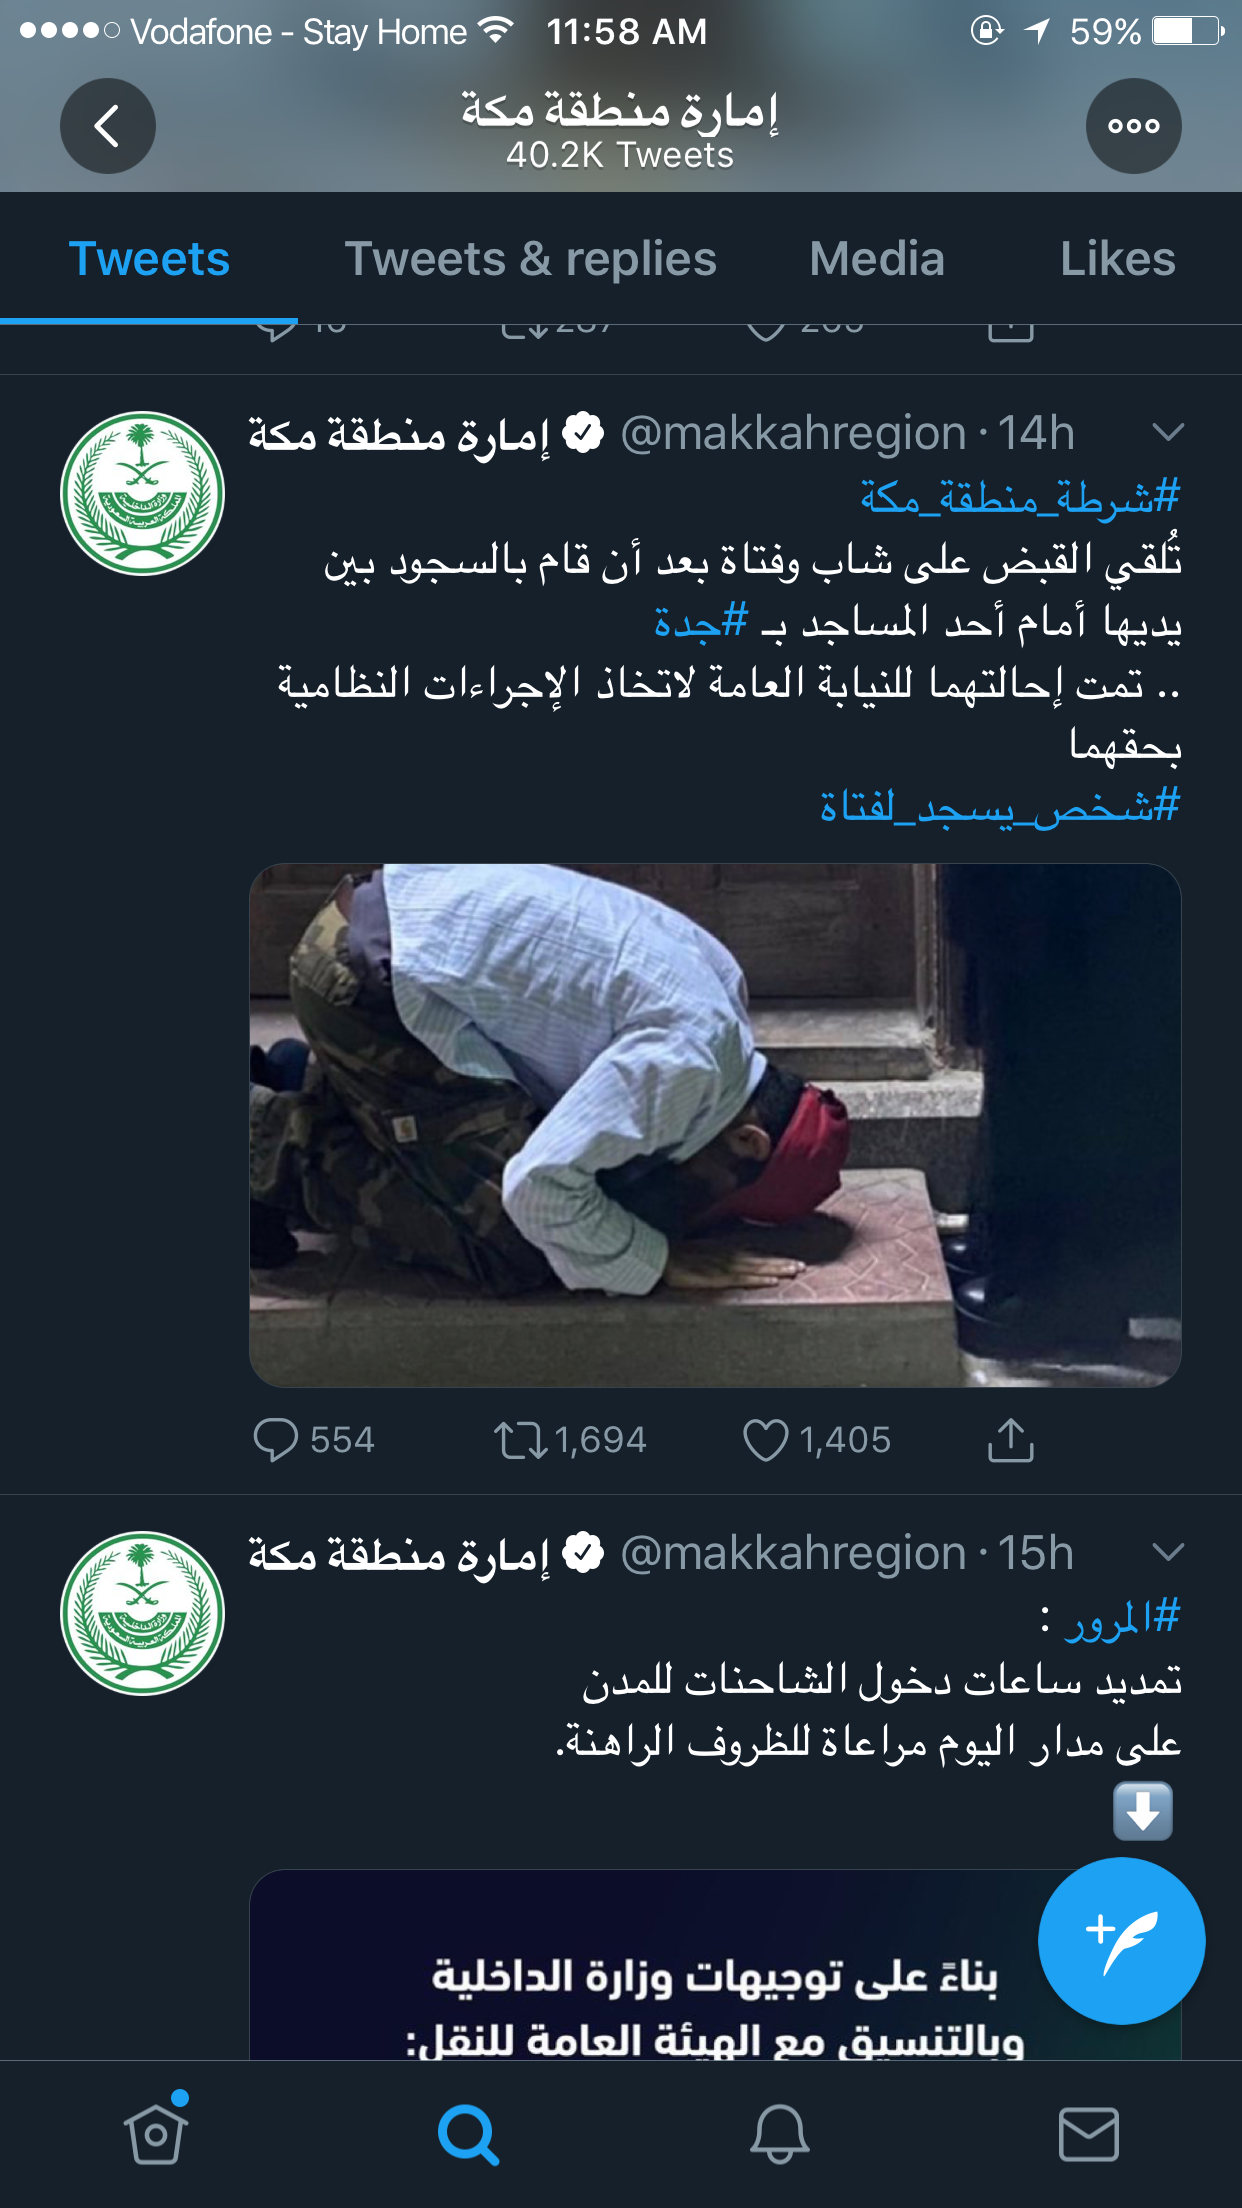 شاب سعودي يسجد لفتاة أمام مسجد بالسعودية وأول إجراء قانون من إمارة مكة ضدهم 2